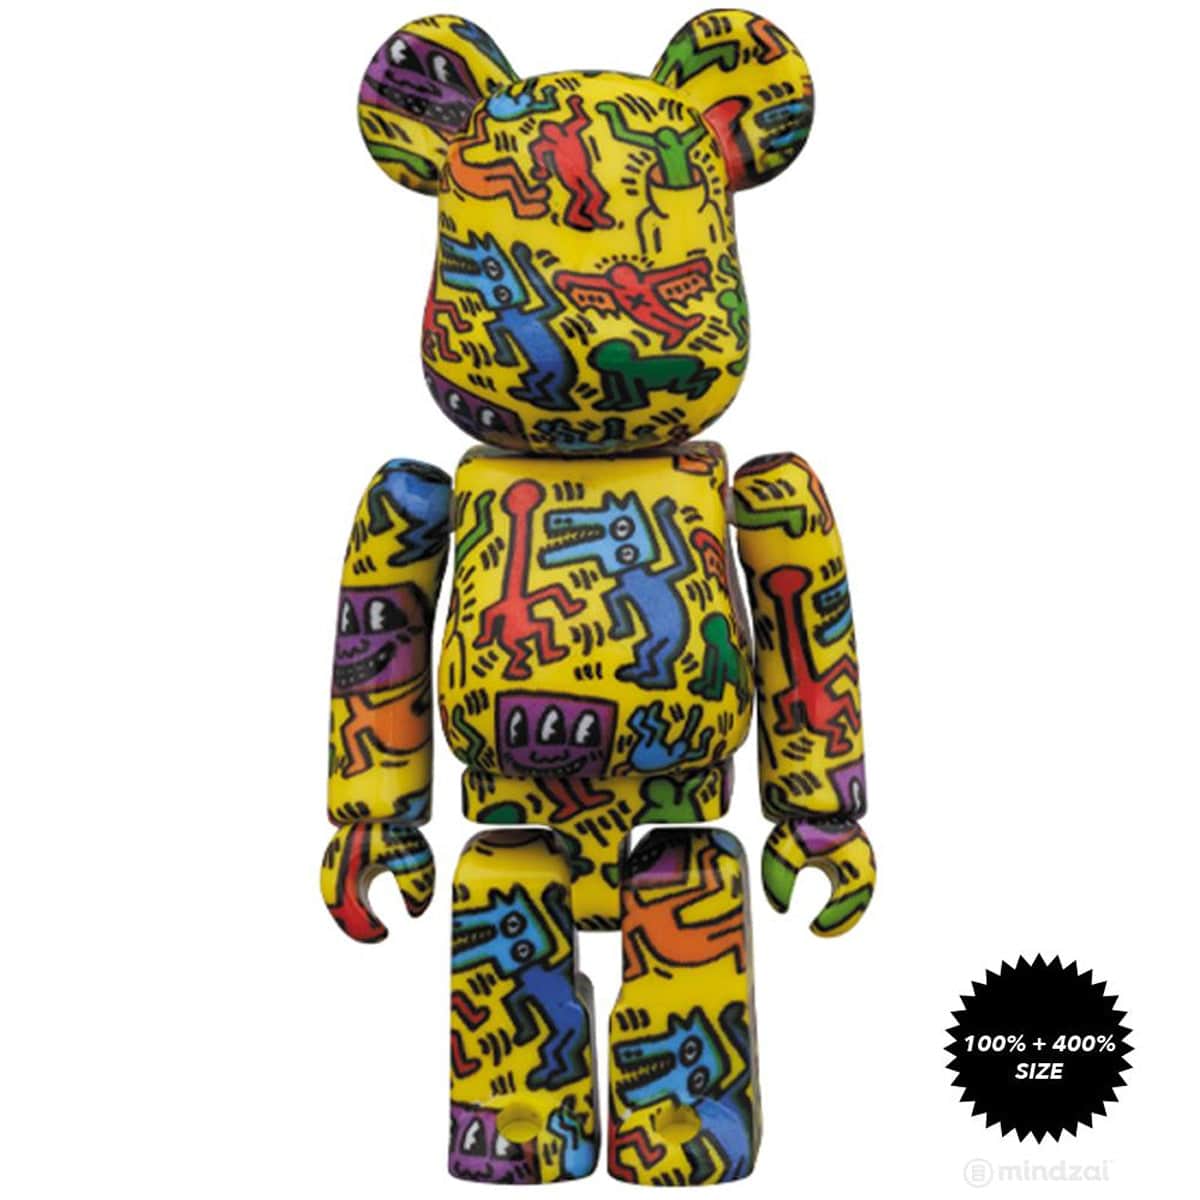 Keith Haring #5 Bearbrick 400% u0026 100% Combo by Medicom